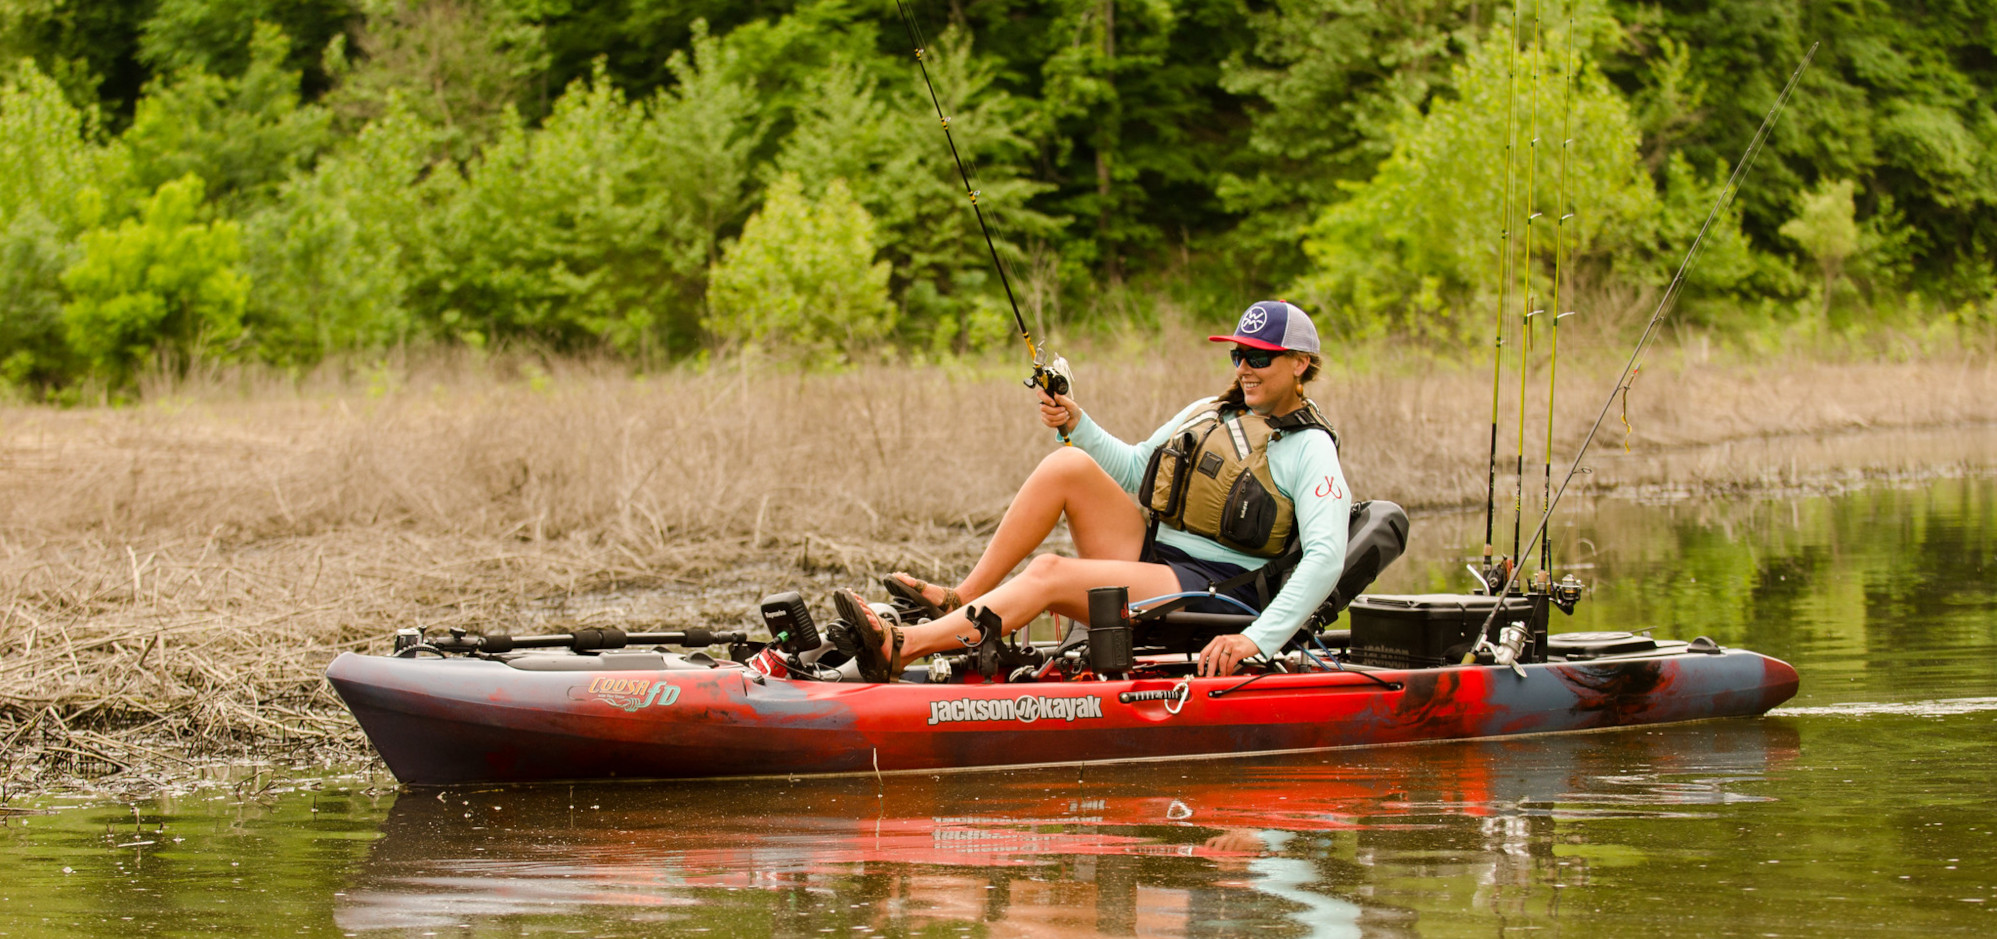 Cómo elegir un carro para nuestro kayak – Blog de Portear Kayaks